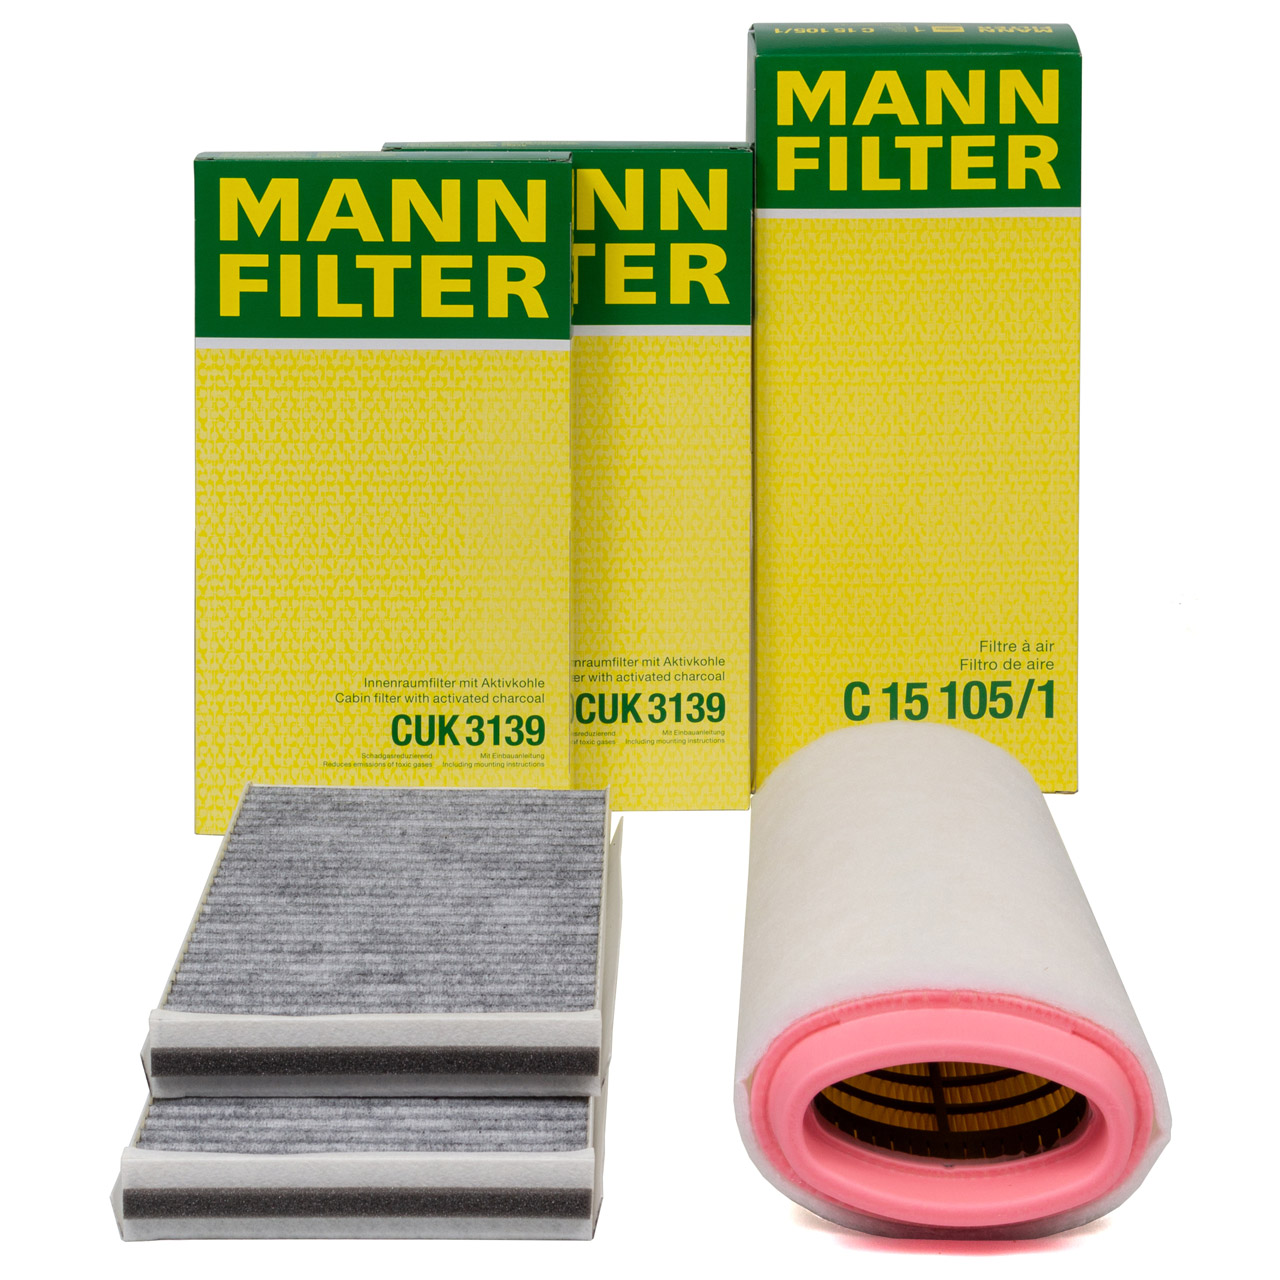 MANN Filterset Innenraum + Luftfilter BMW 5er E60 E61 520d 150/163 PS M47